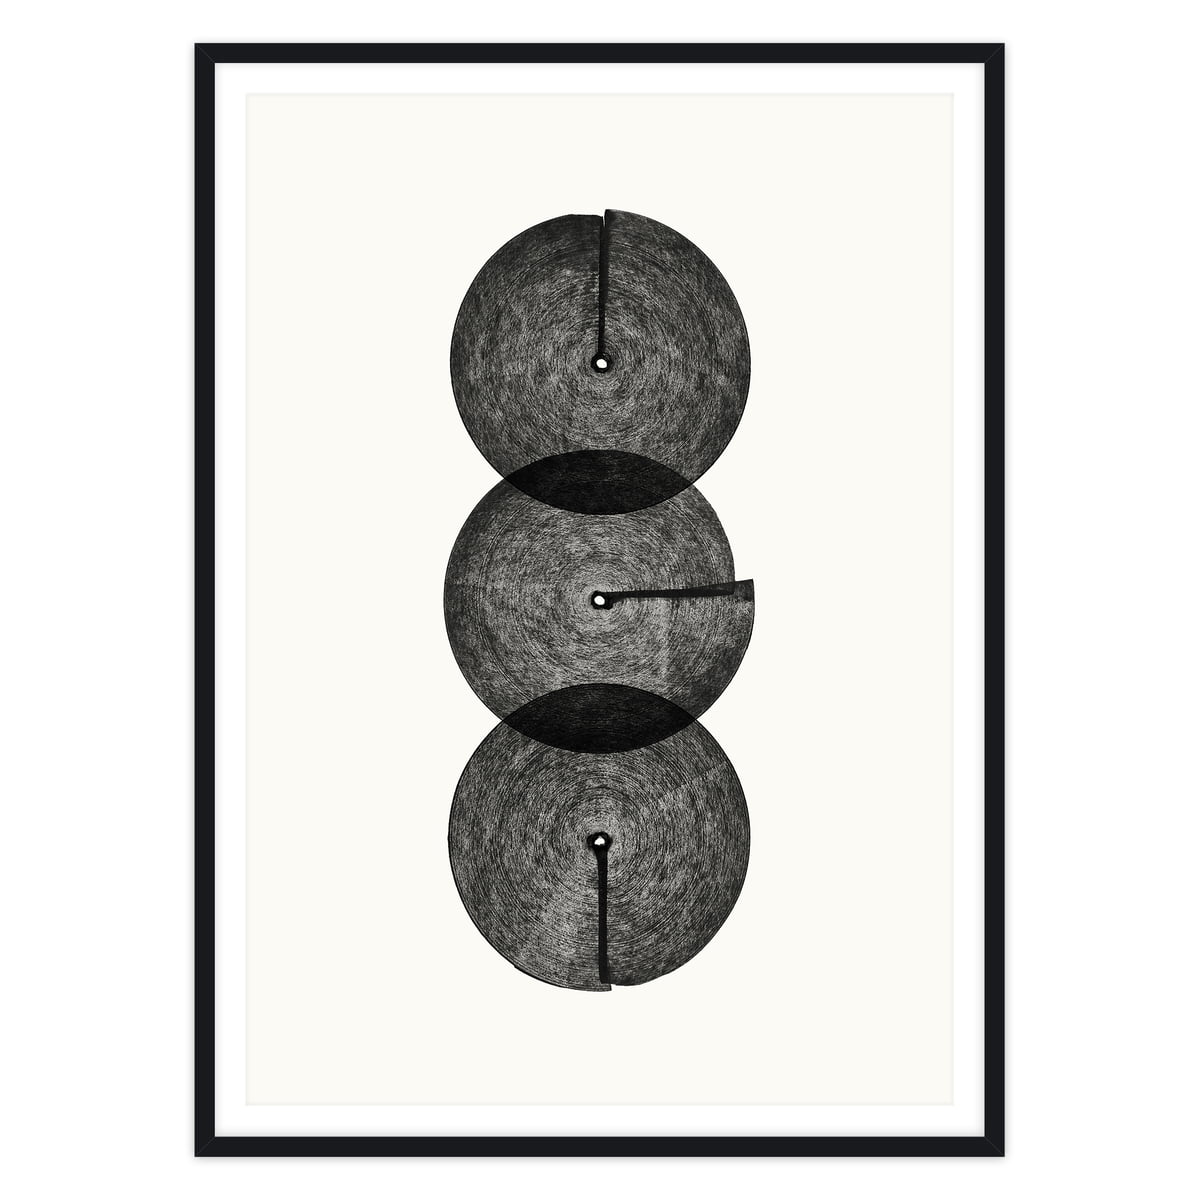 artvoll - Circles No. 3 Poster mit Rahmen